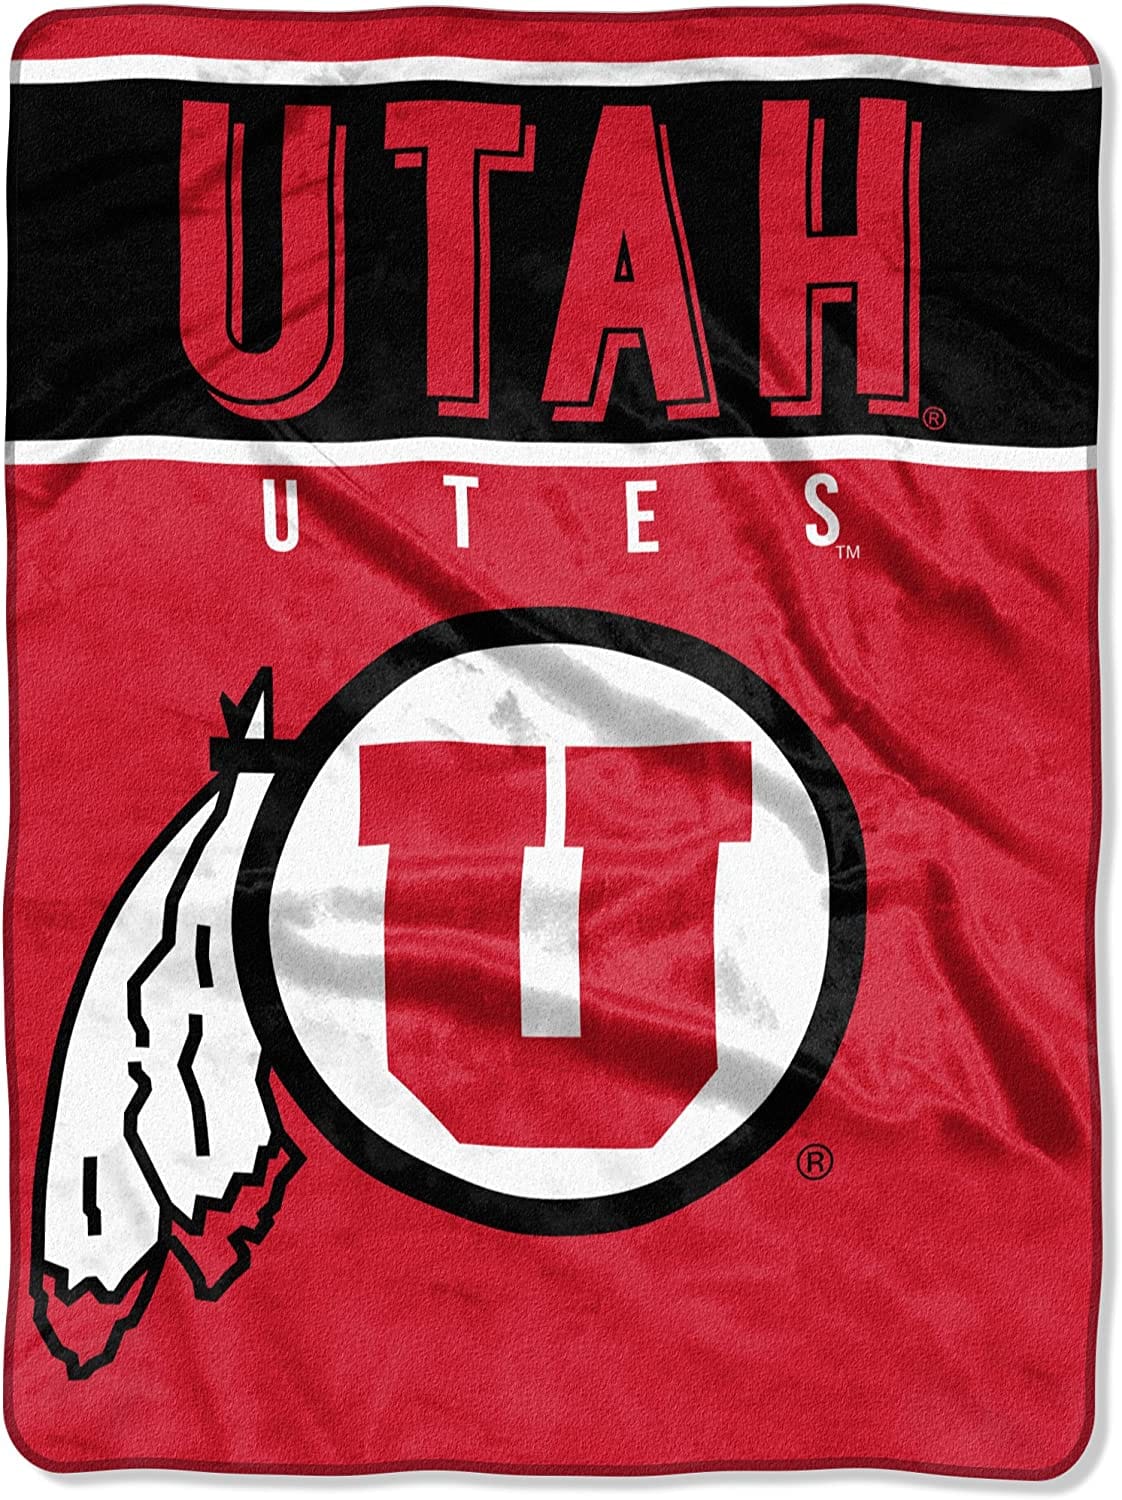 Ncaa Utah Utes Unisex Classic Fleece Blanket